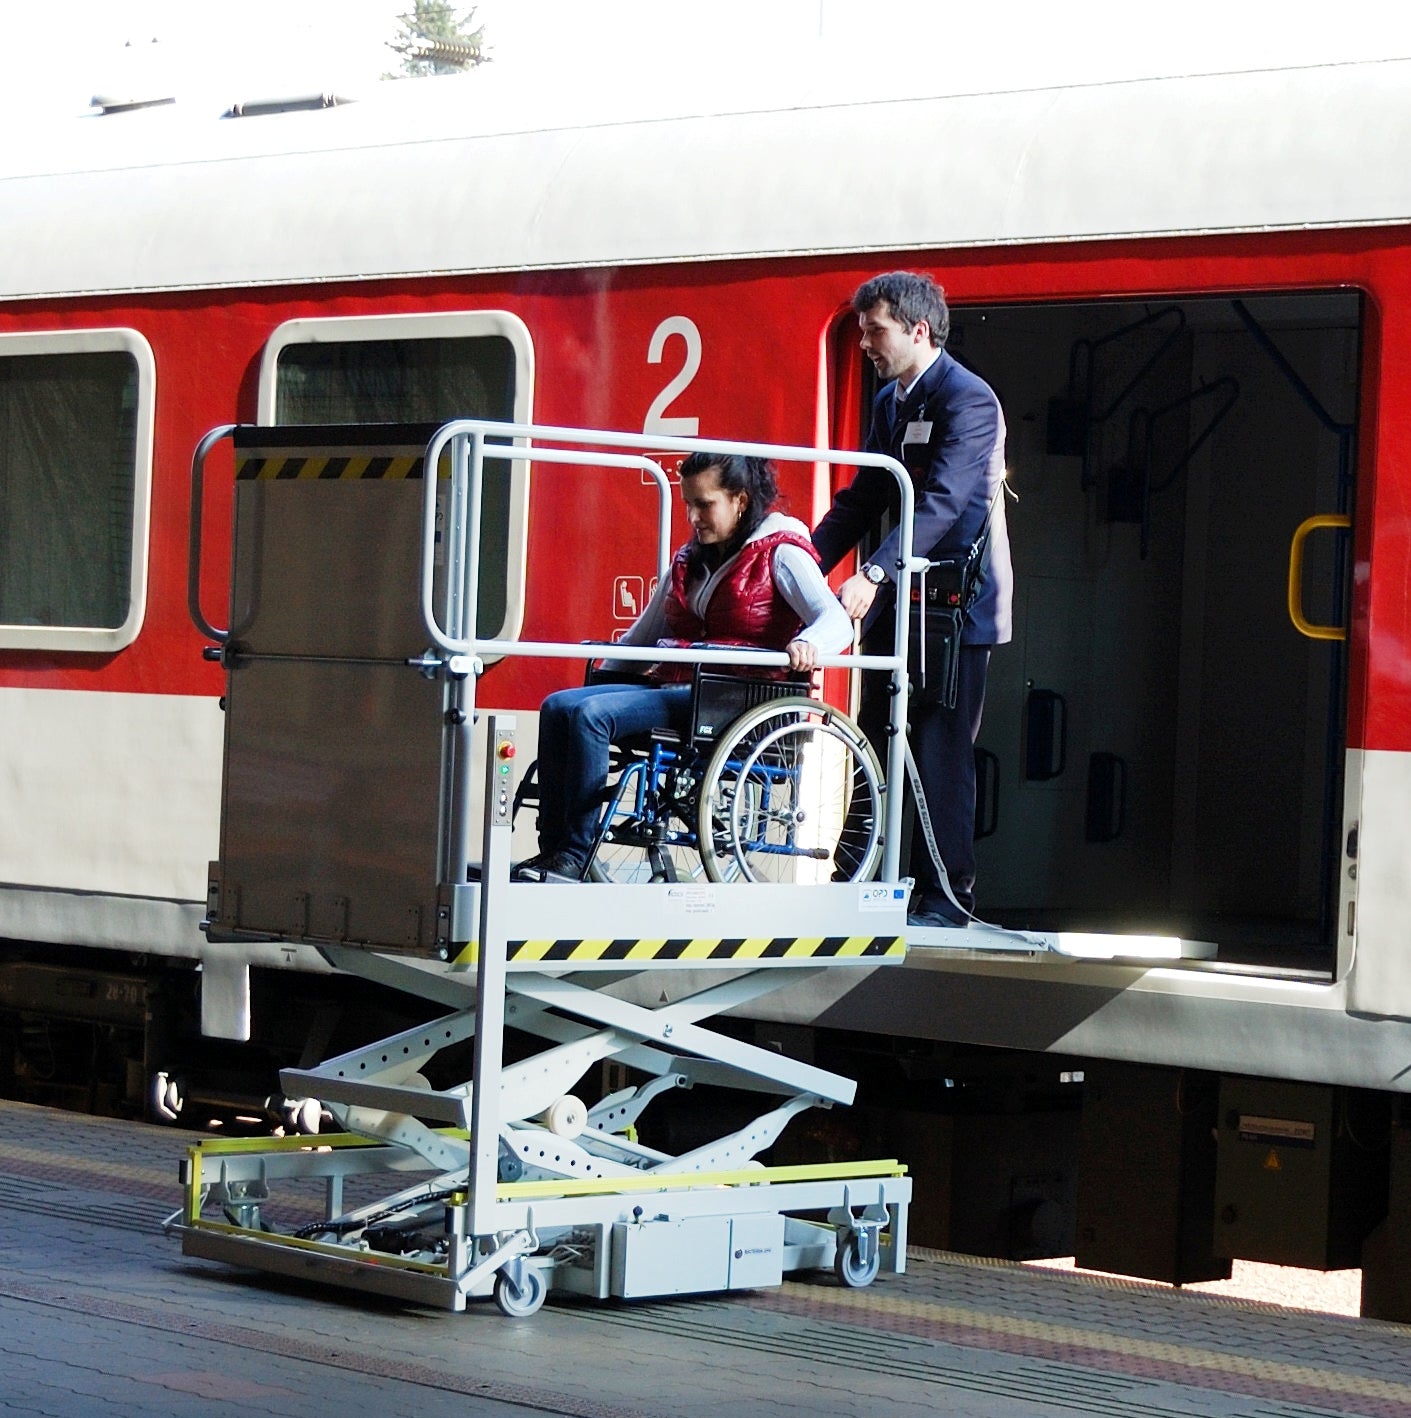 Вагон для инвалидов в поезде. Вагоны ТВЗ 4529 подъемник для инвалидов. Вагоны ТВЗ 4445 подъемник для инвалидов. Вагон для инвалидов колясочников РЖД. Спецвагон для инвалидов РЖД.